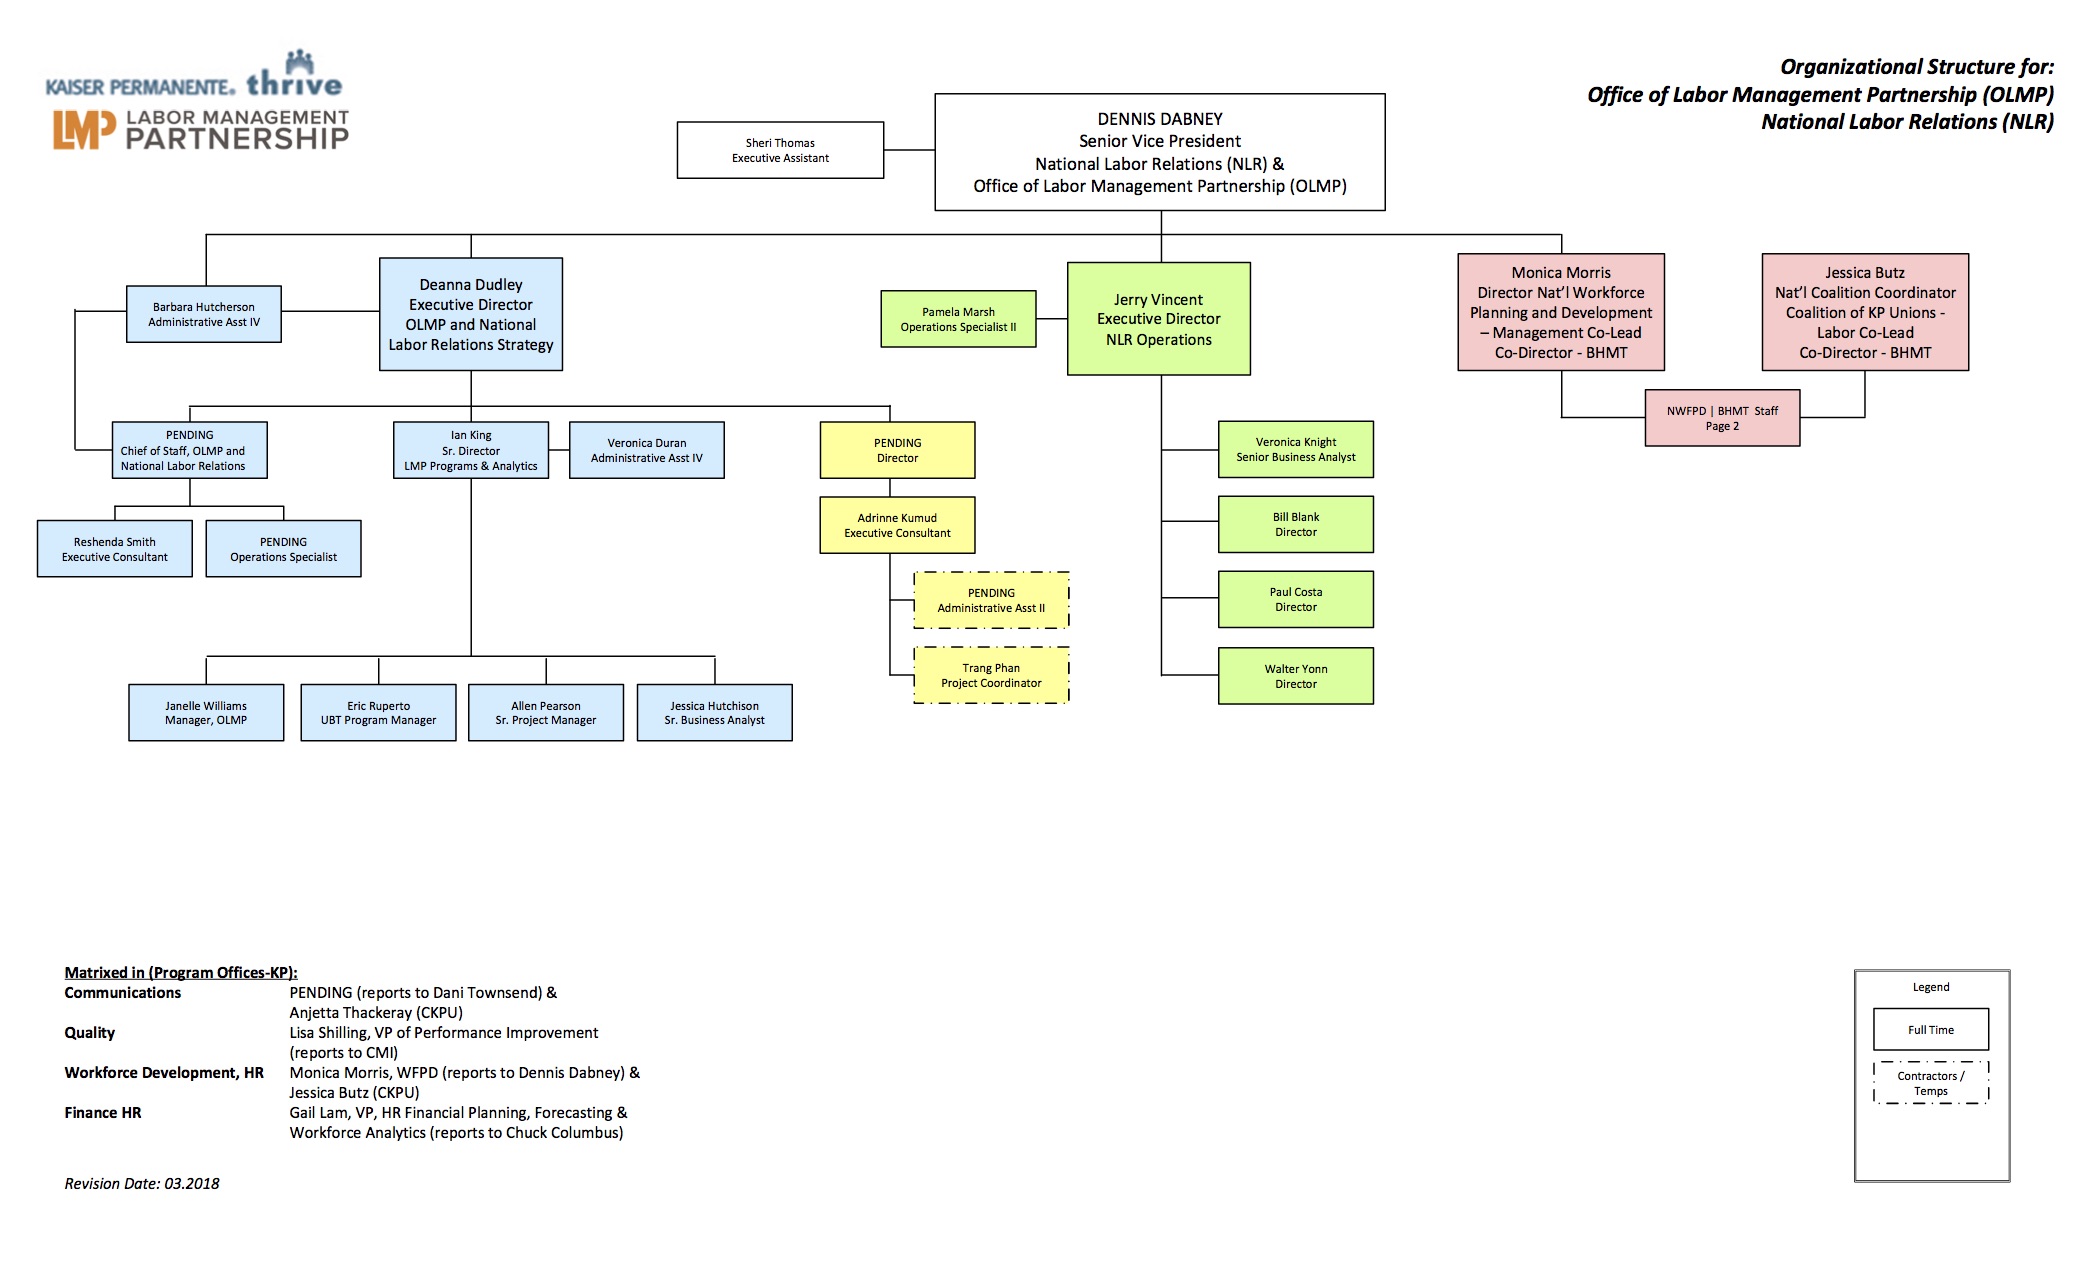 Kaiser Organizational Chart